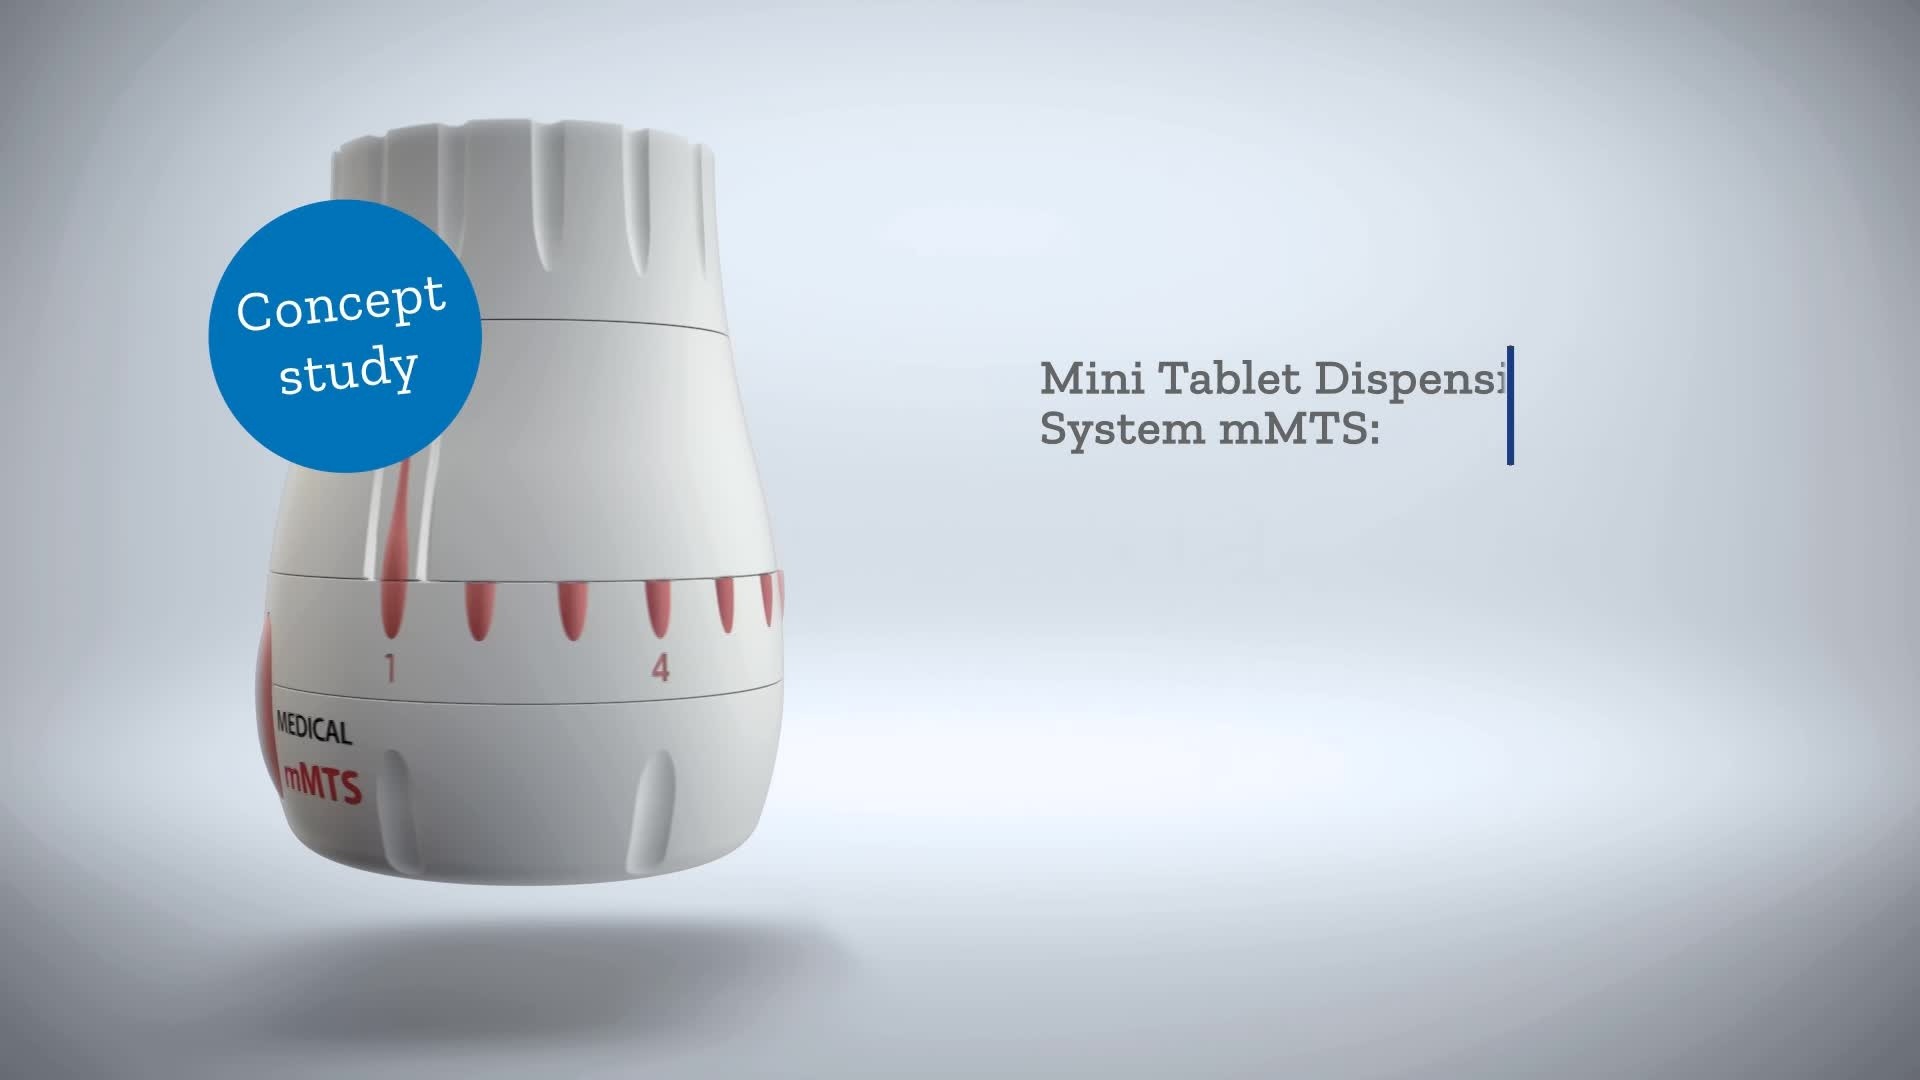  innovative mini tablet dispenser